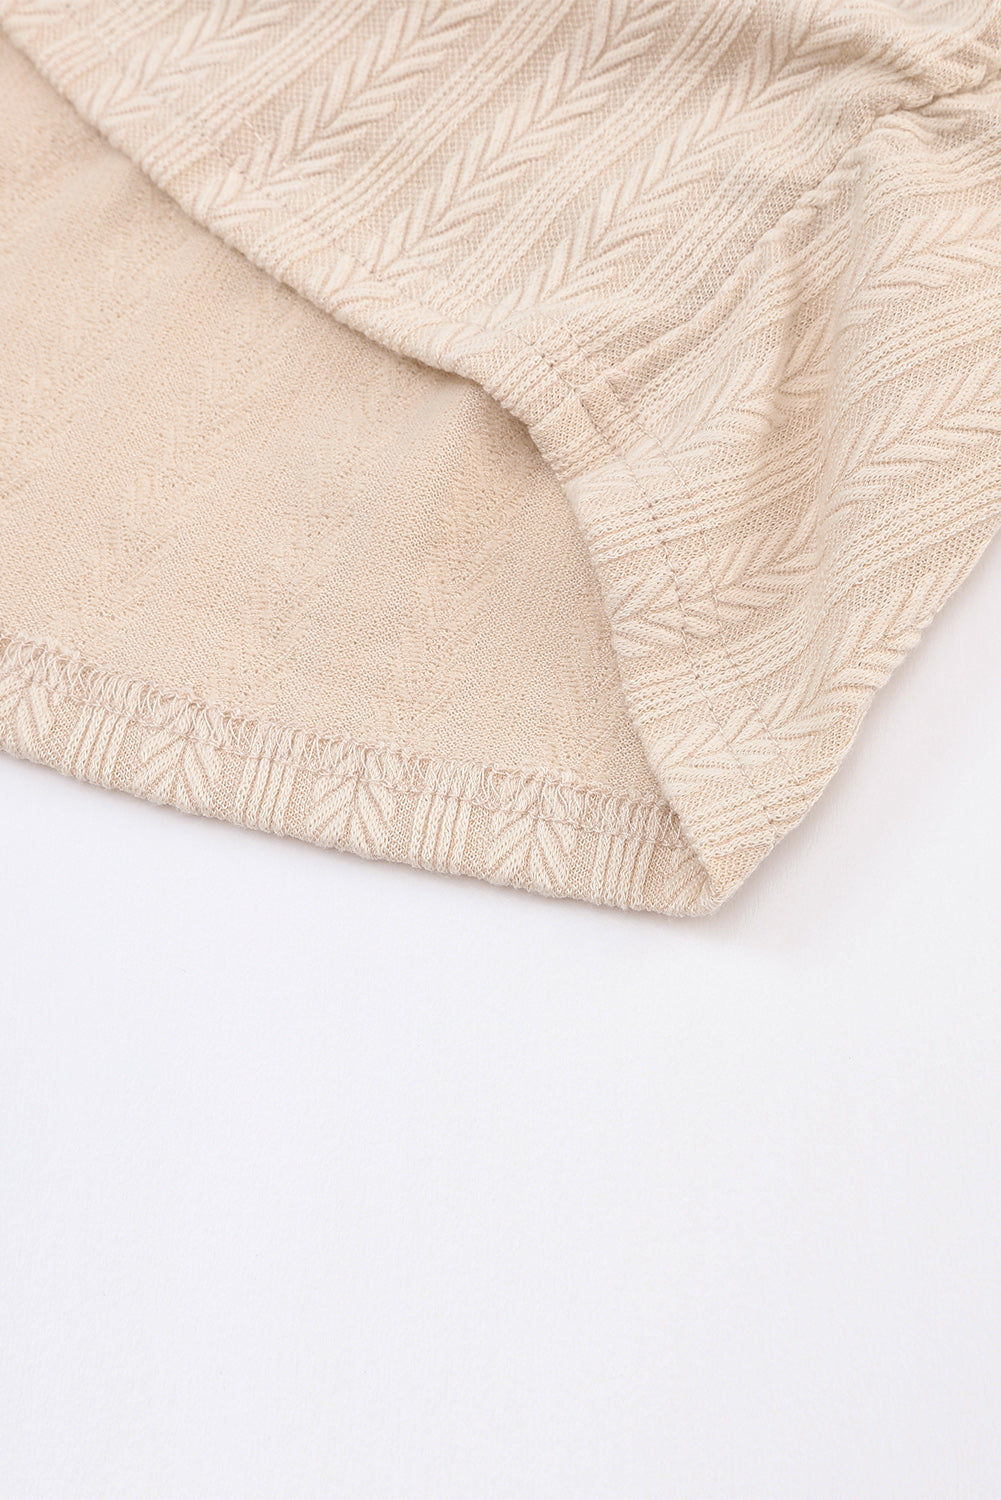 Robe en tricot à manches bulles froncées sur le côté, texture tactile abricot